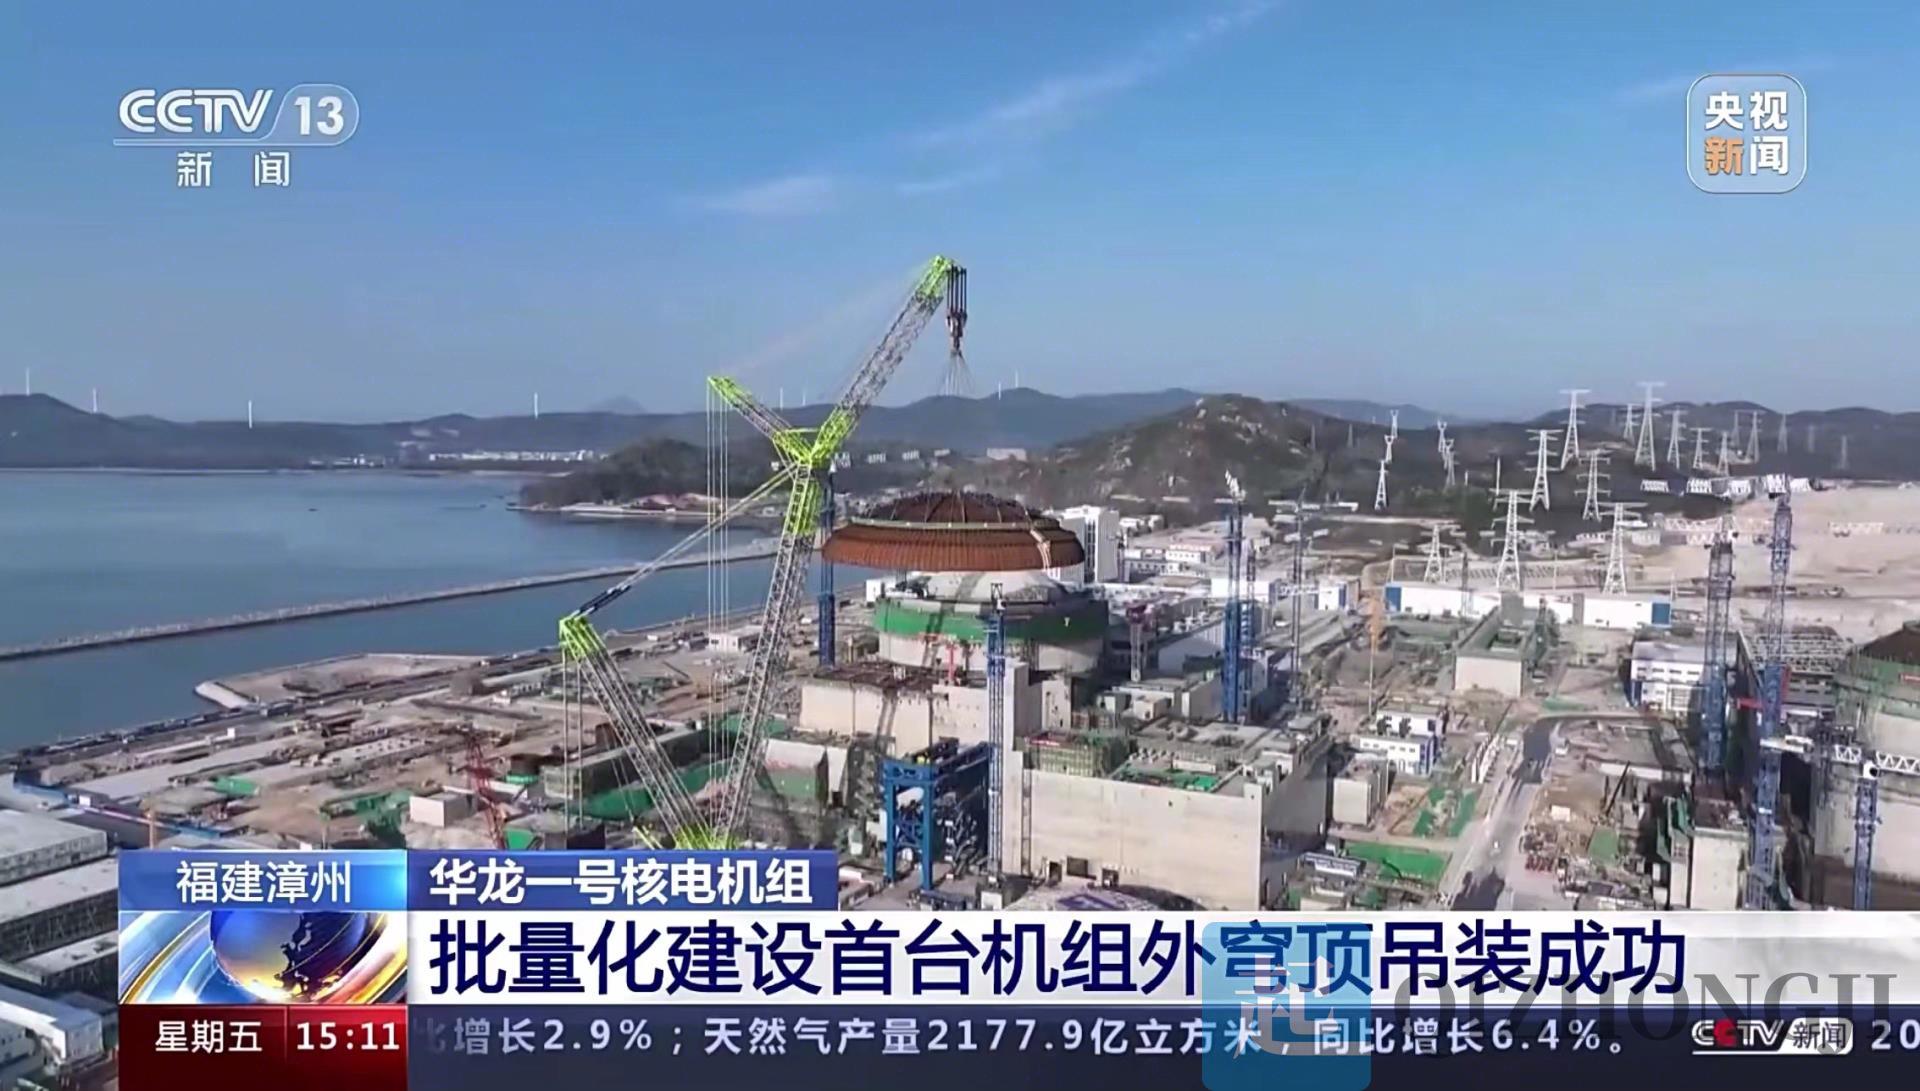 央视新闻重点关注!中联重科3600吨起重机助力核电建设再秀硬实力